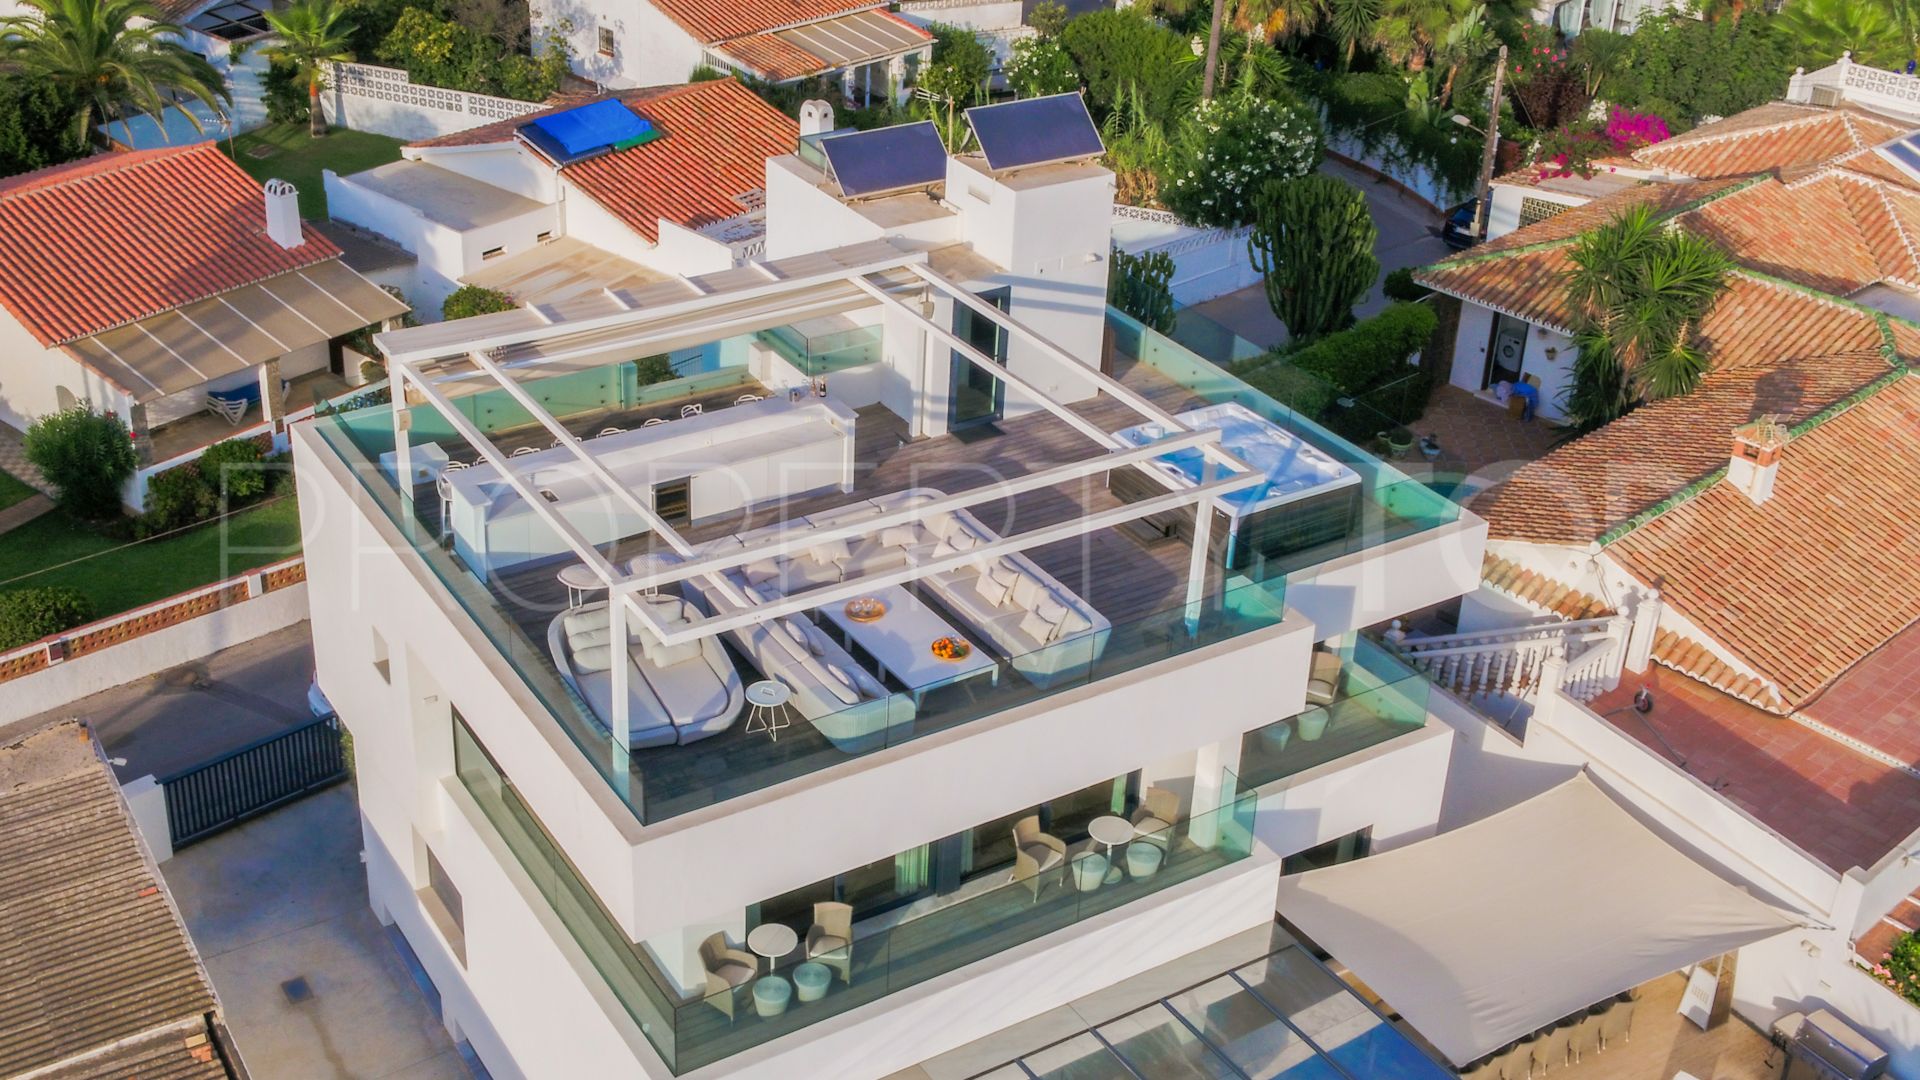 6 bedrooms villa in Costabella for sale